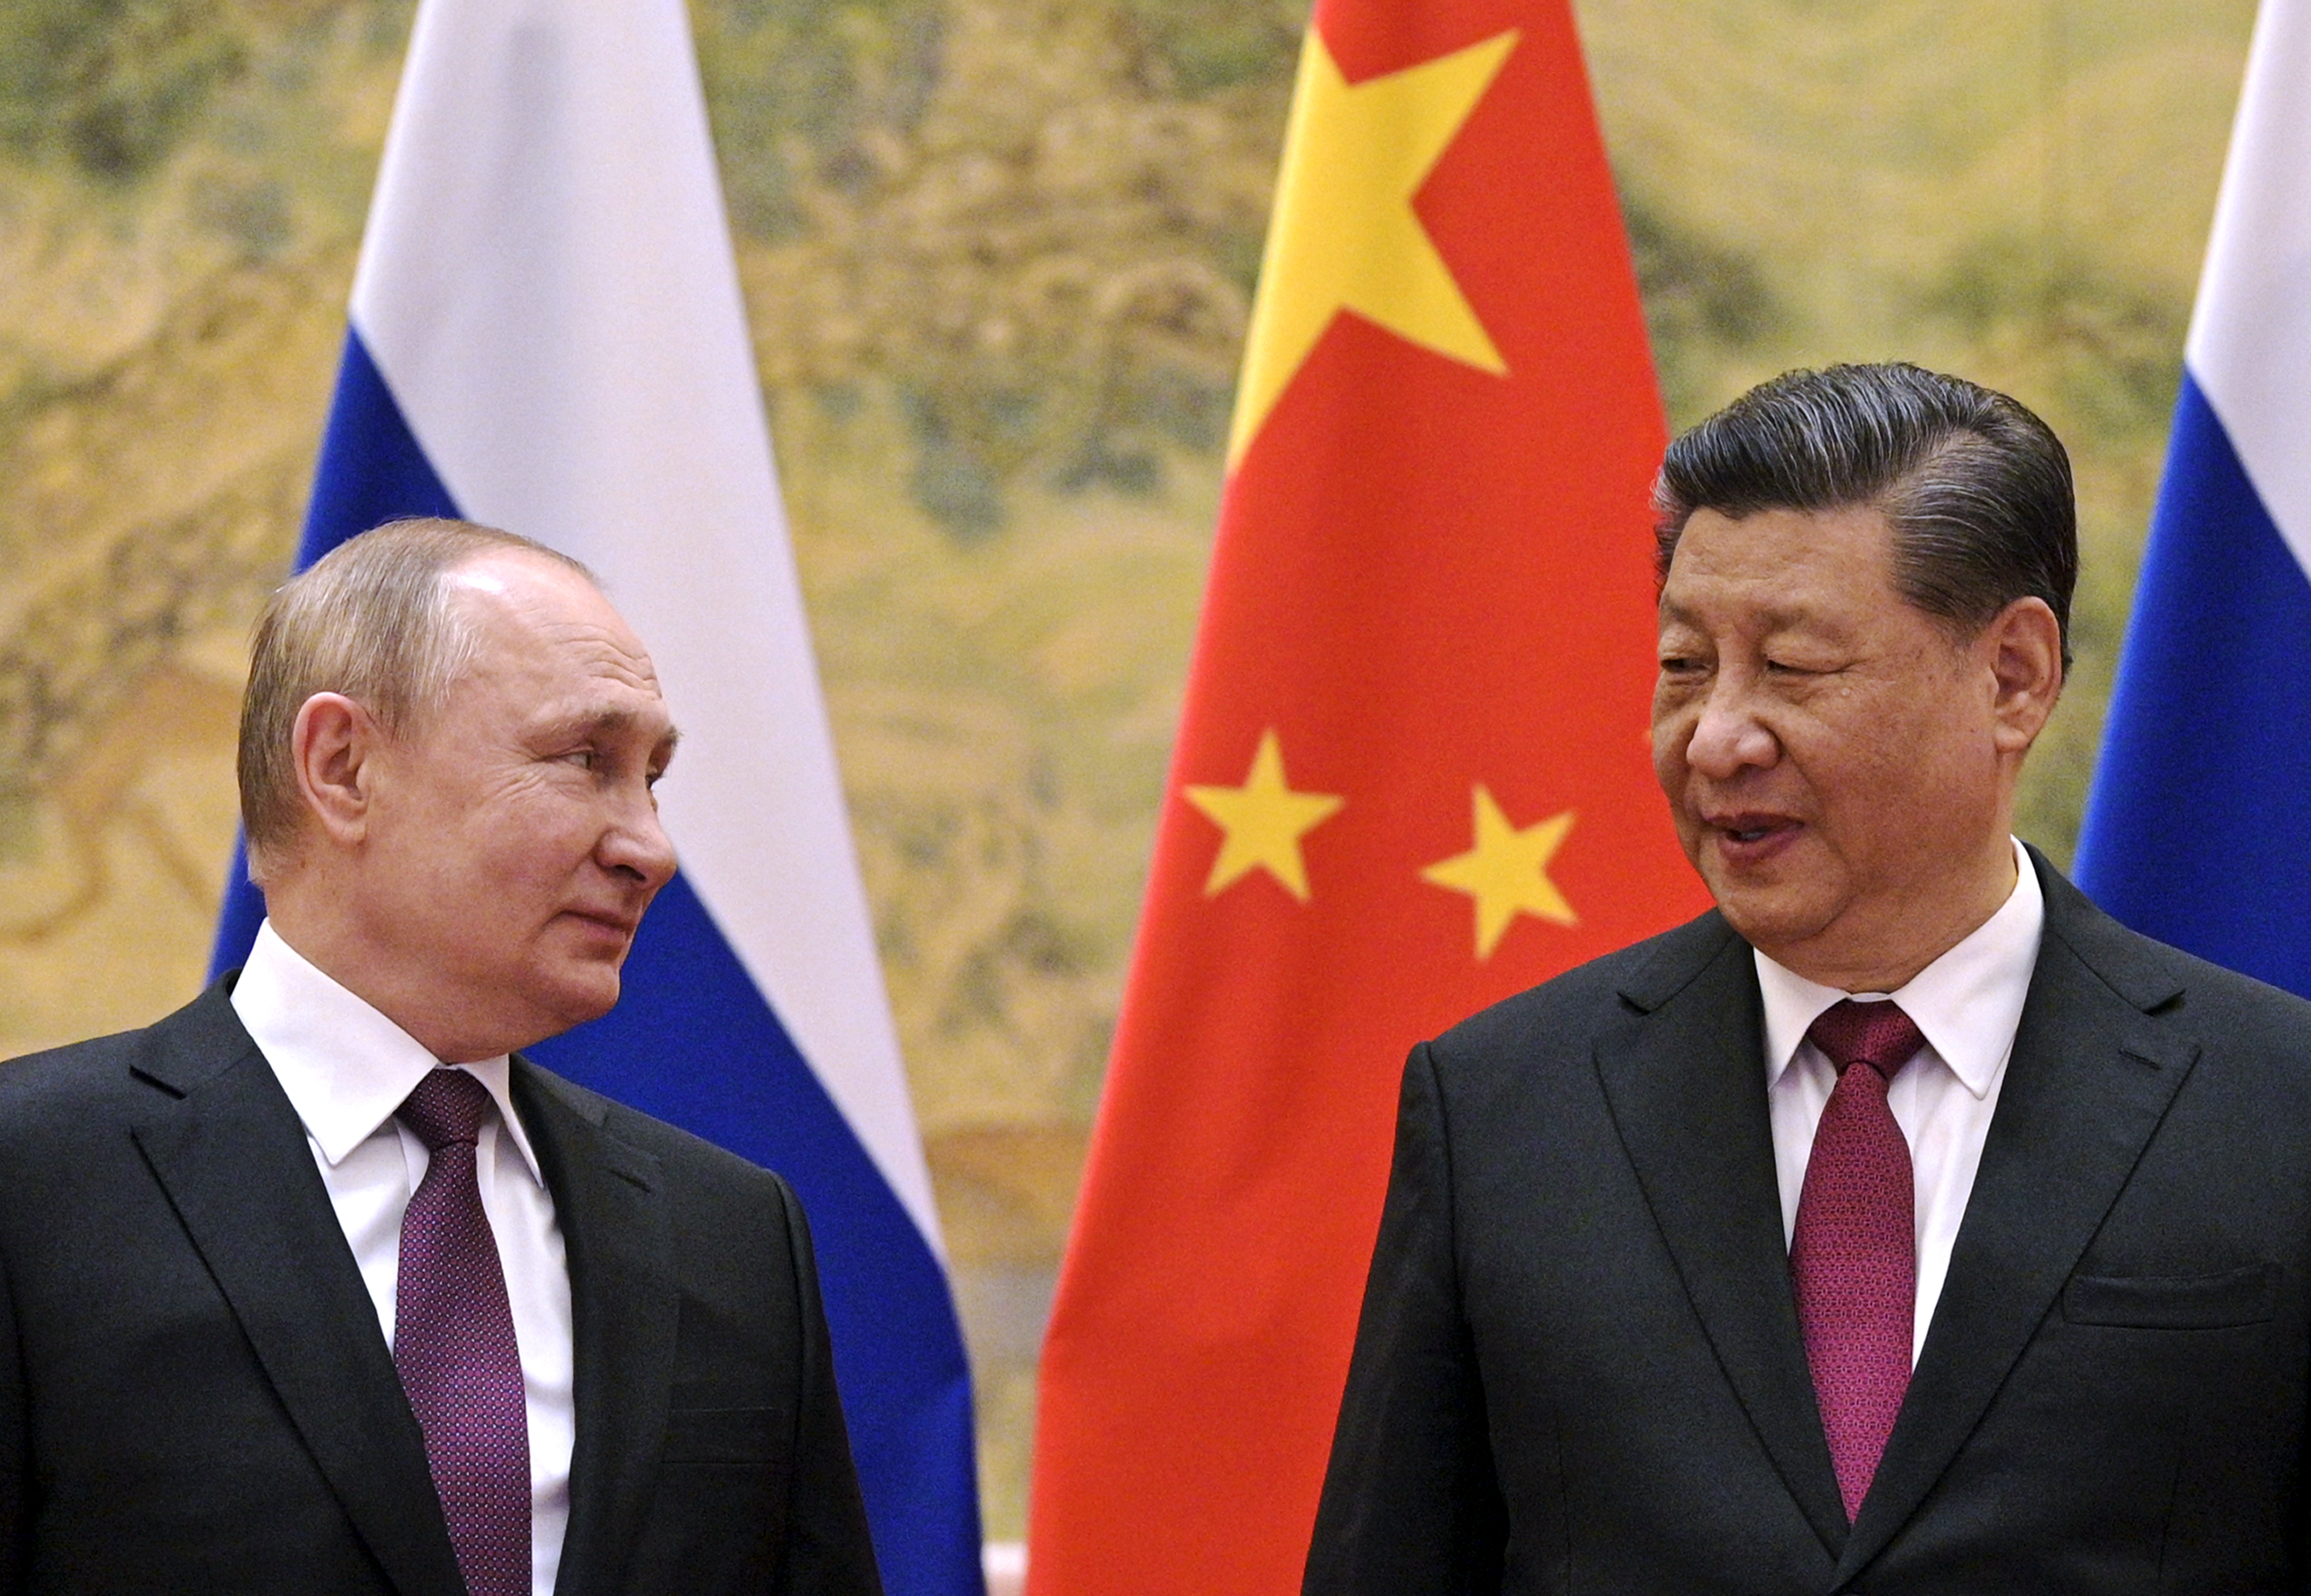 El presidente chino, Xi Jinping (derecha) y el presidente ruso, Vladimir Putin, durante su reunión del 4 de febrero de 2022 en Beijing, China. (Alexei Druzhinin, Sputnik, Foto de Pool del Kremlin vía AP, Archivo)